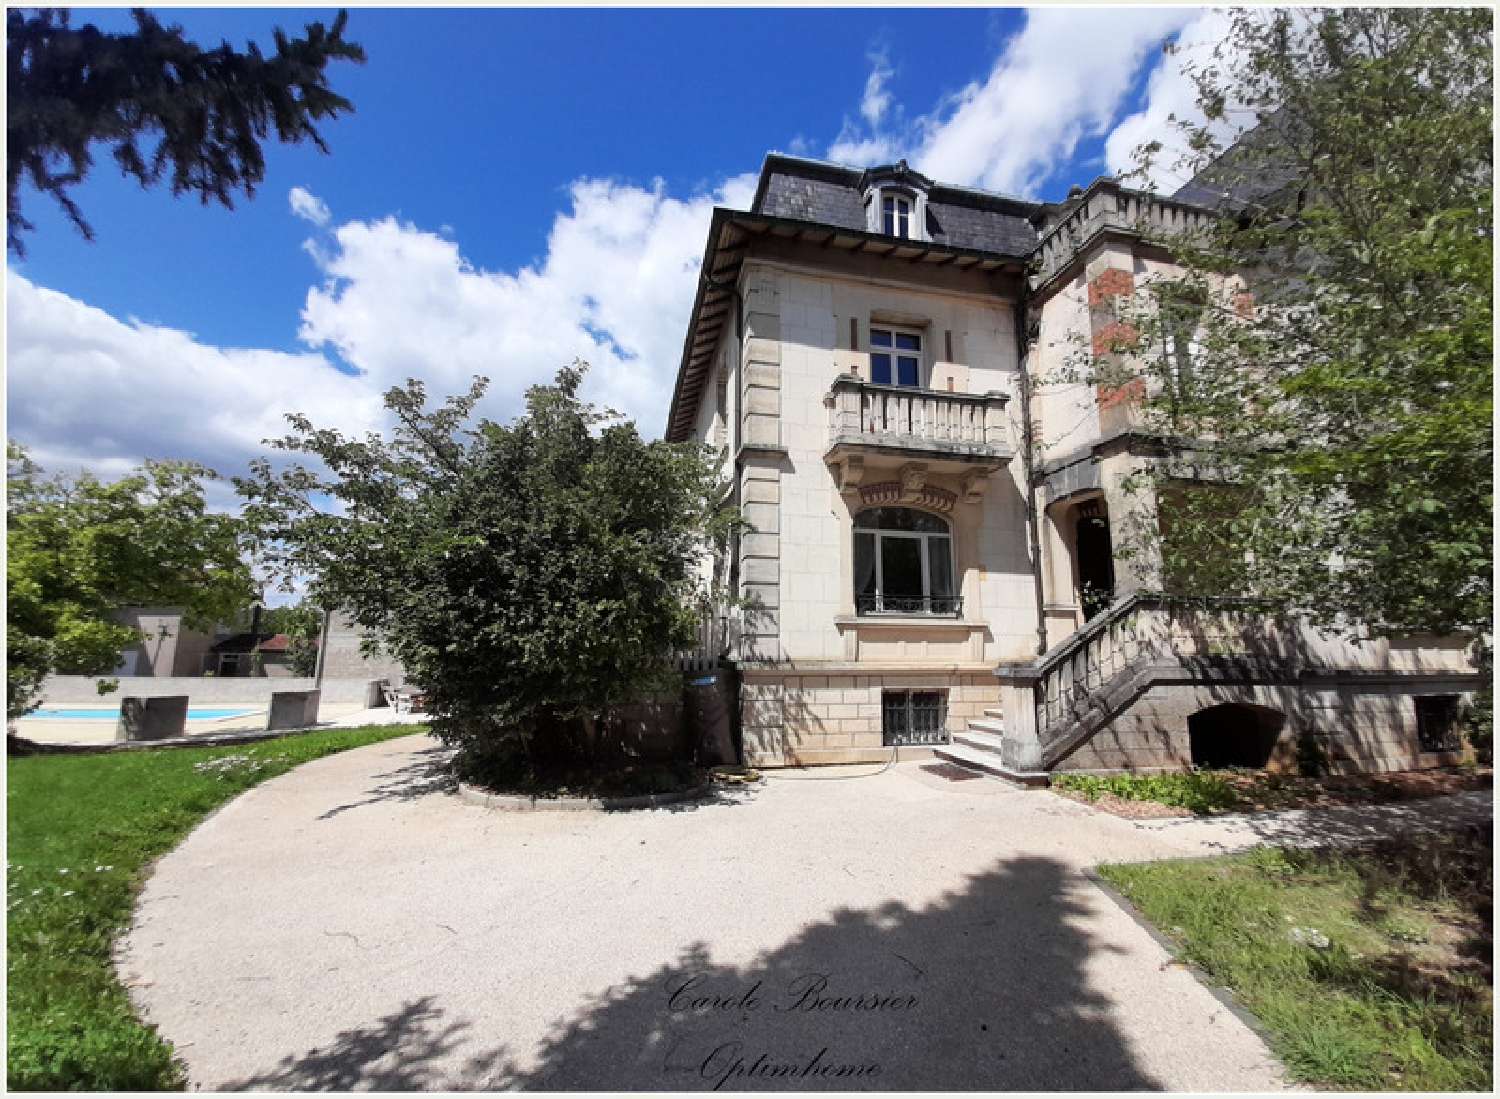  à vendre maison Liffol-le-Grand Vosges 1